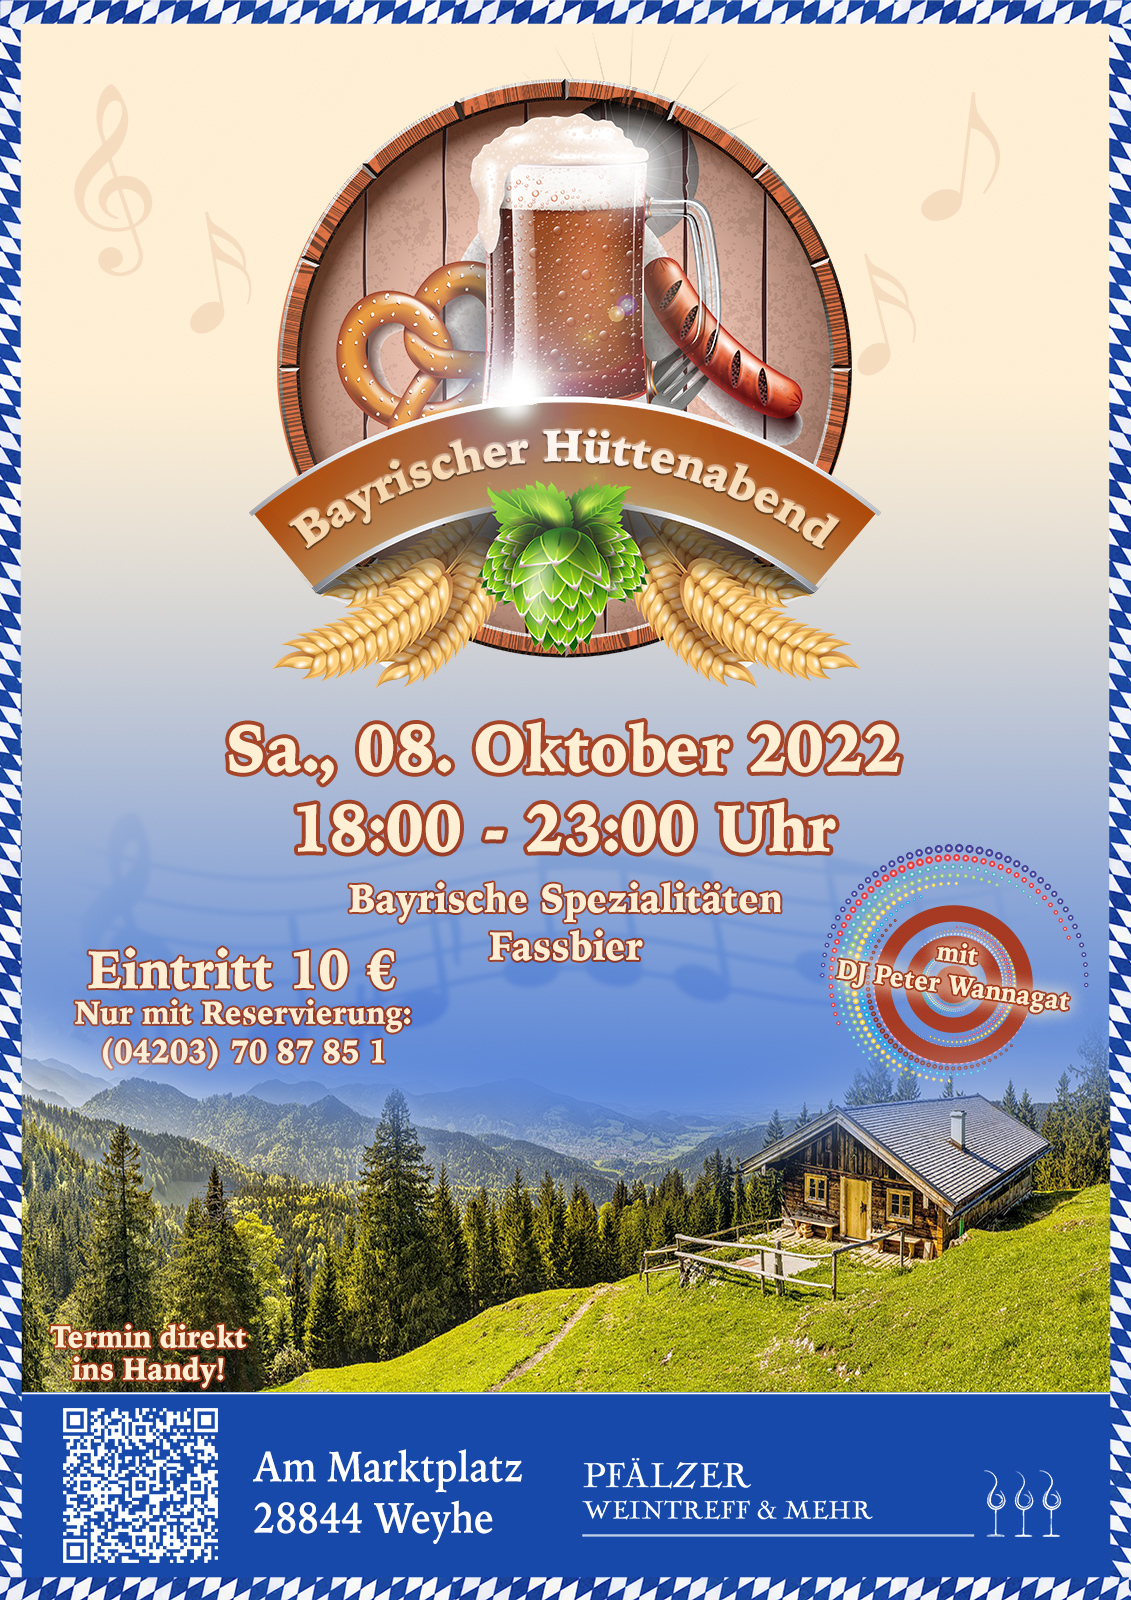 PWT Event Plakat 2022 bayerischer4